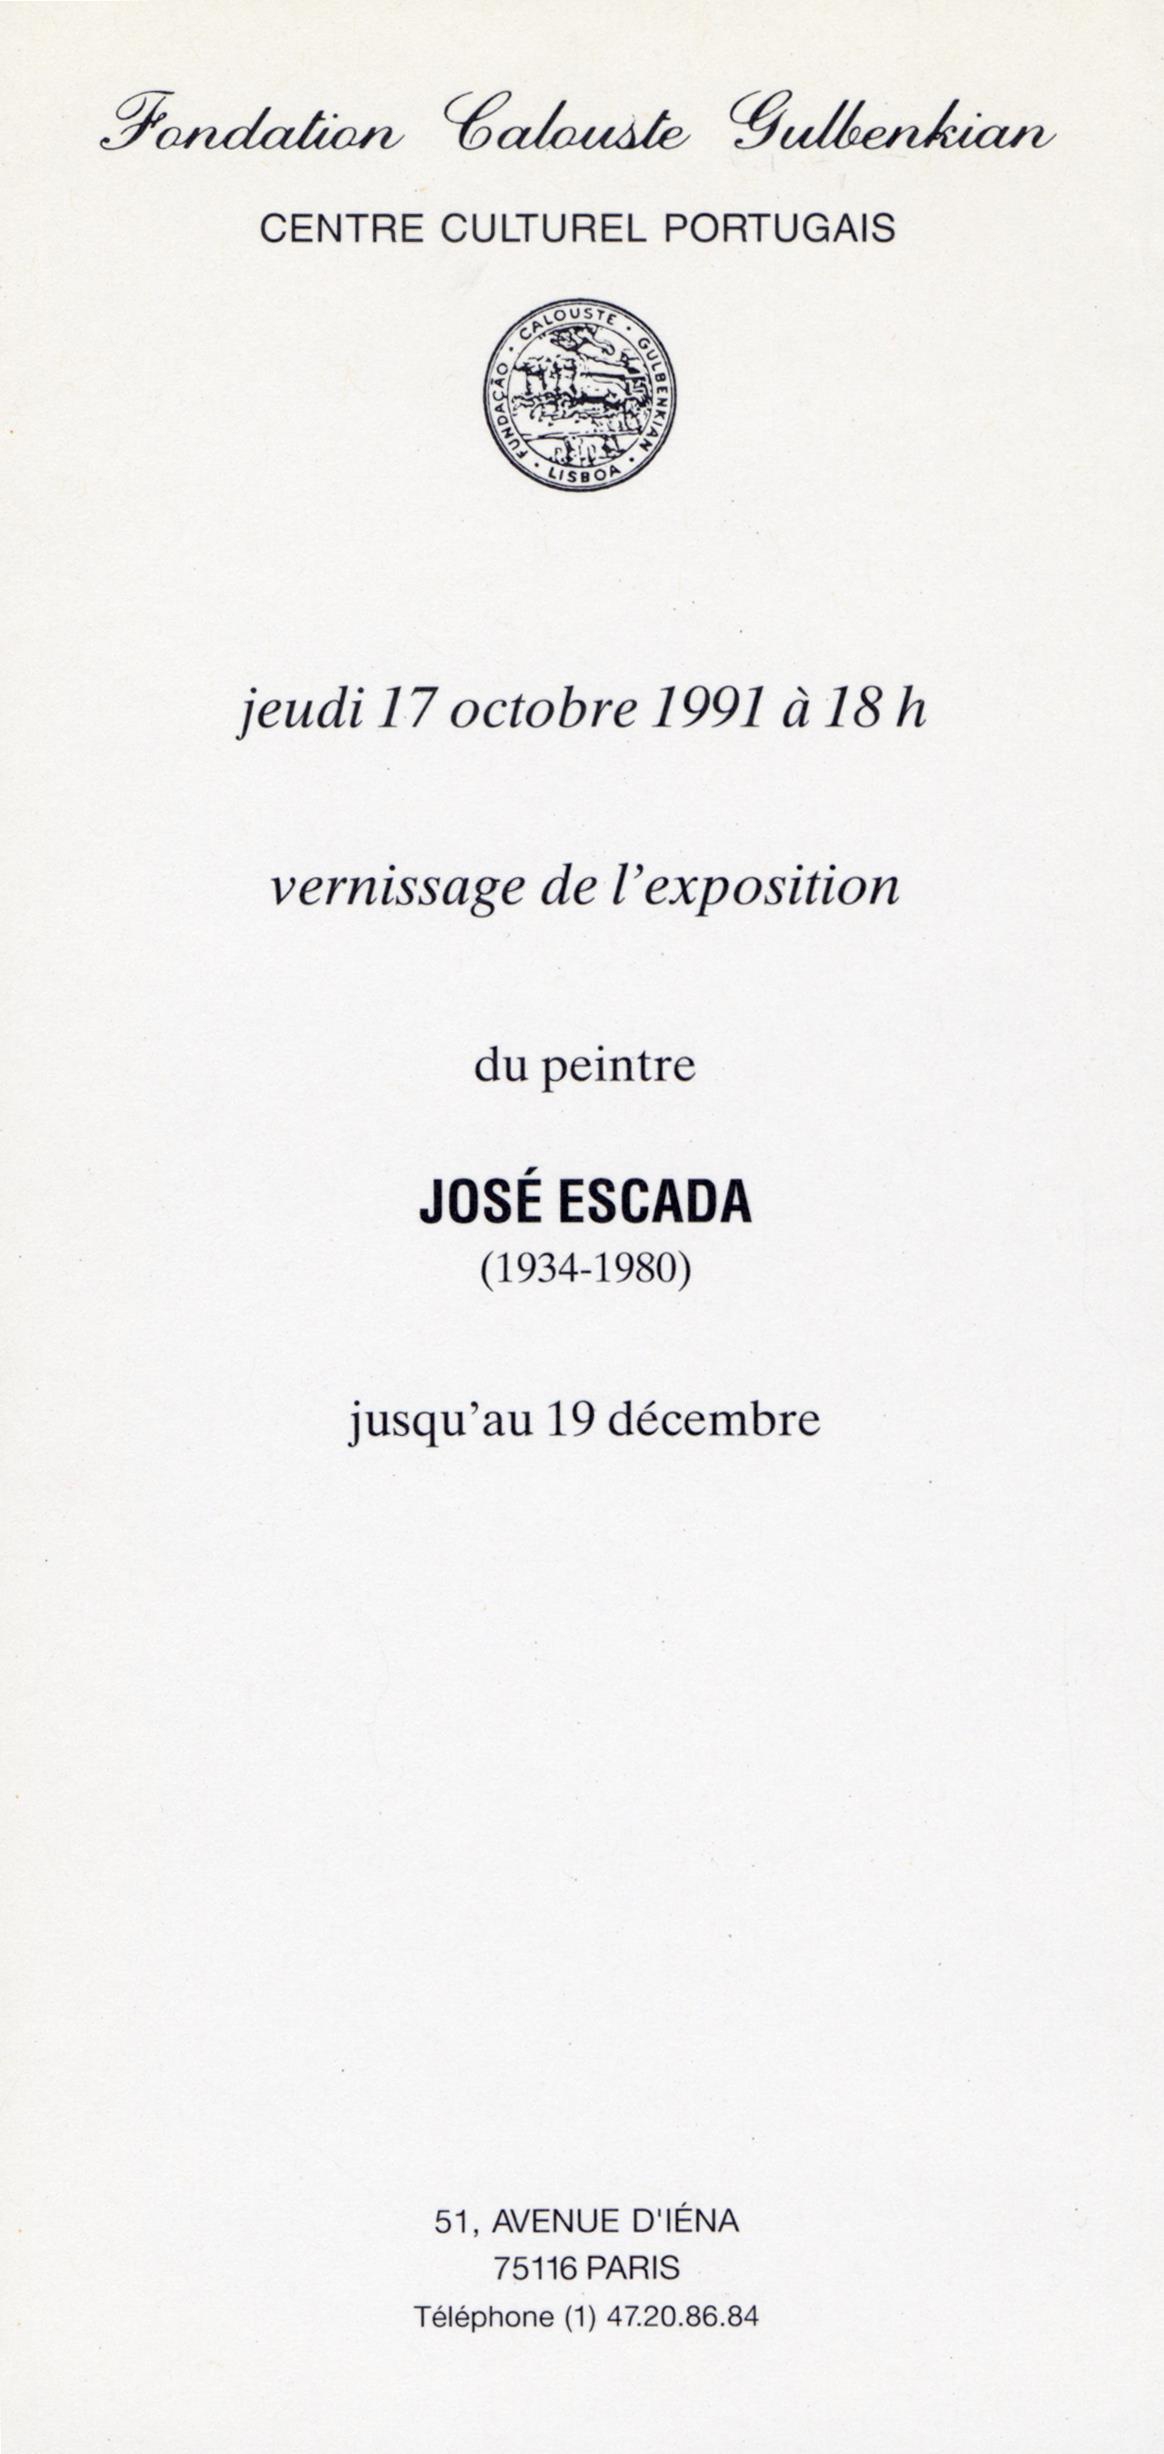 José Escada (1934 – 1980)